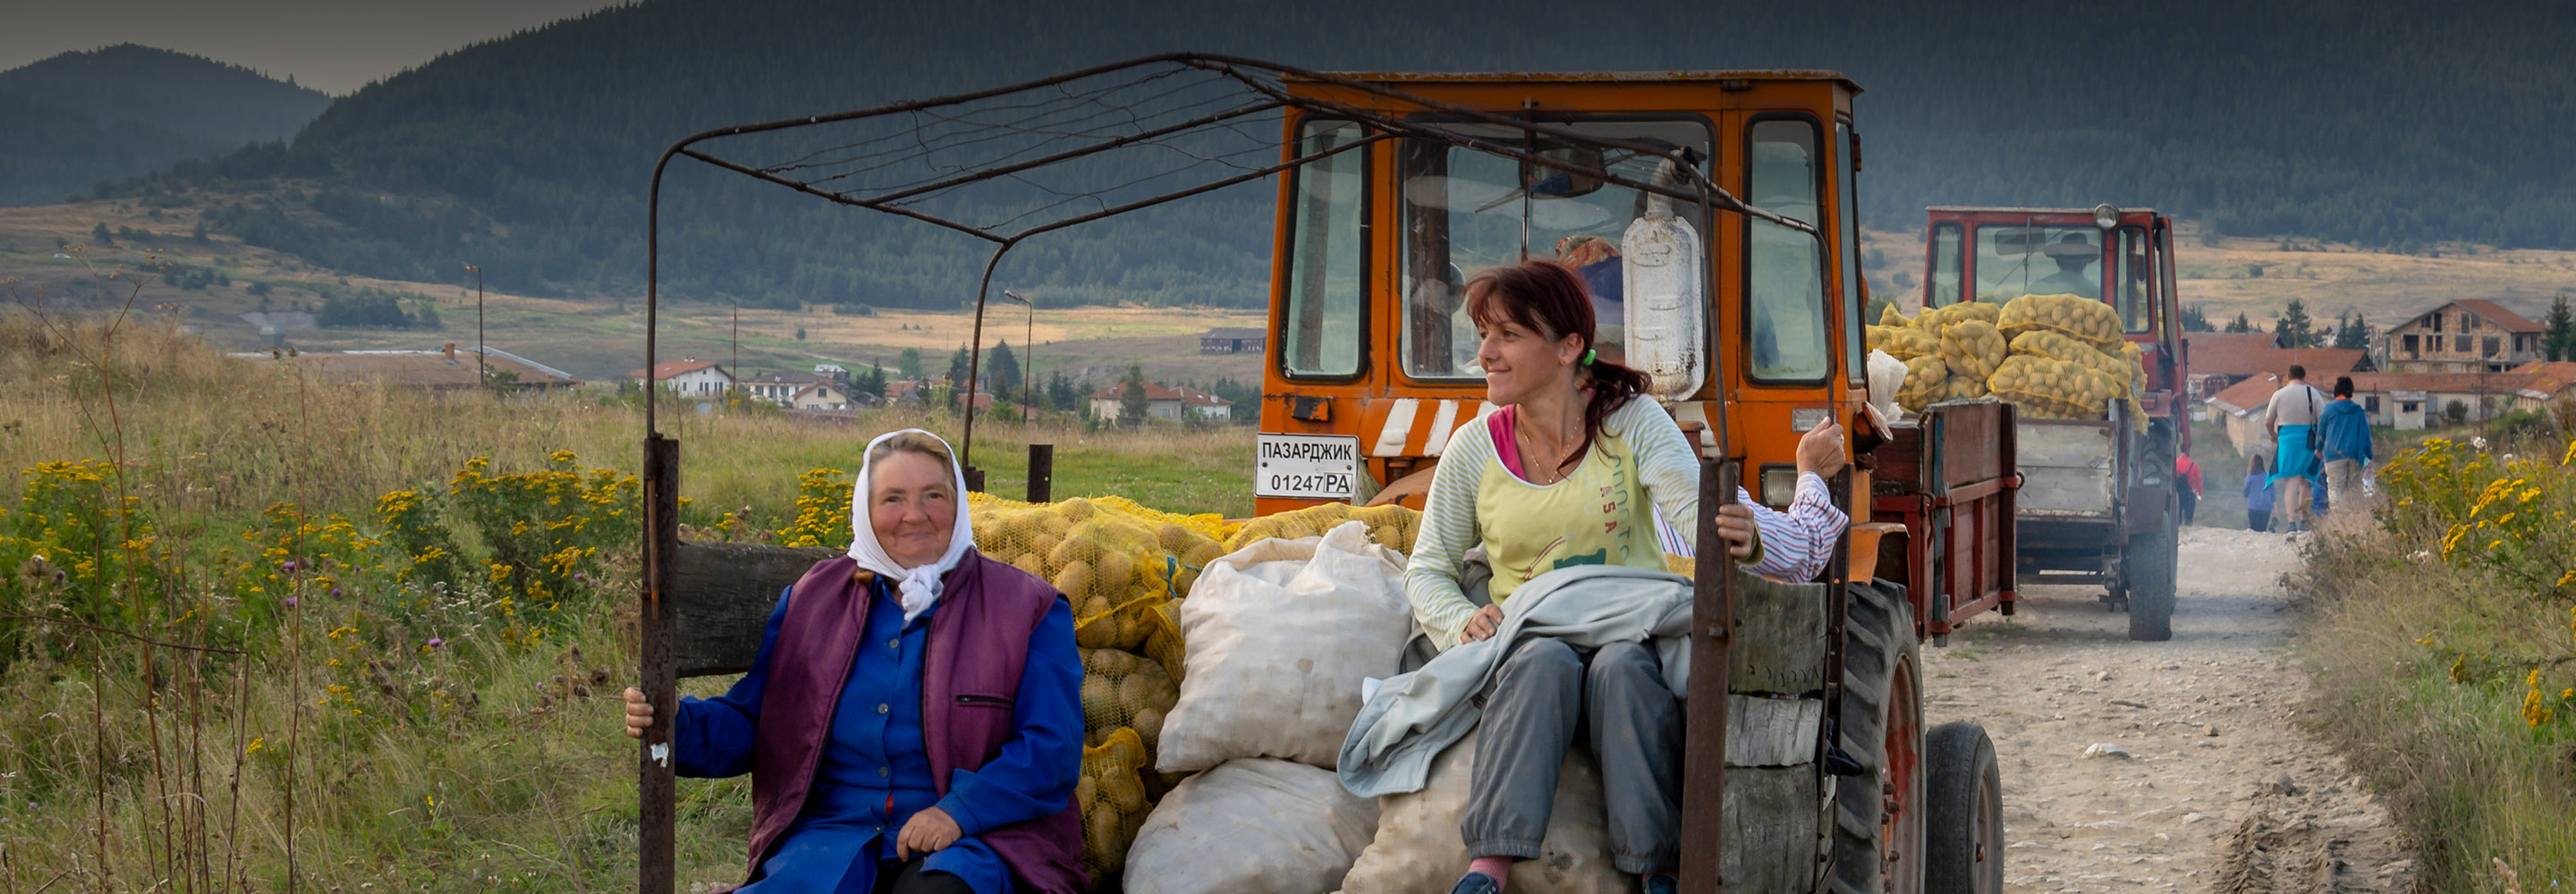 Бедность и КФС по праздникам: 10 минусов жизни в Болгарии